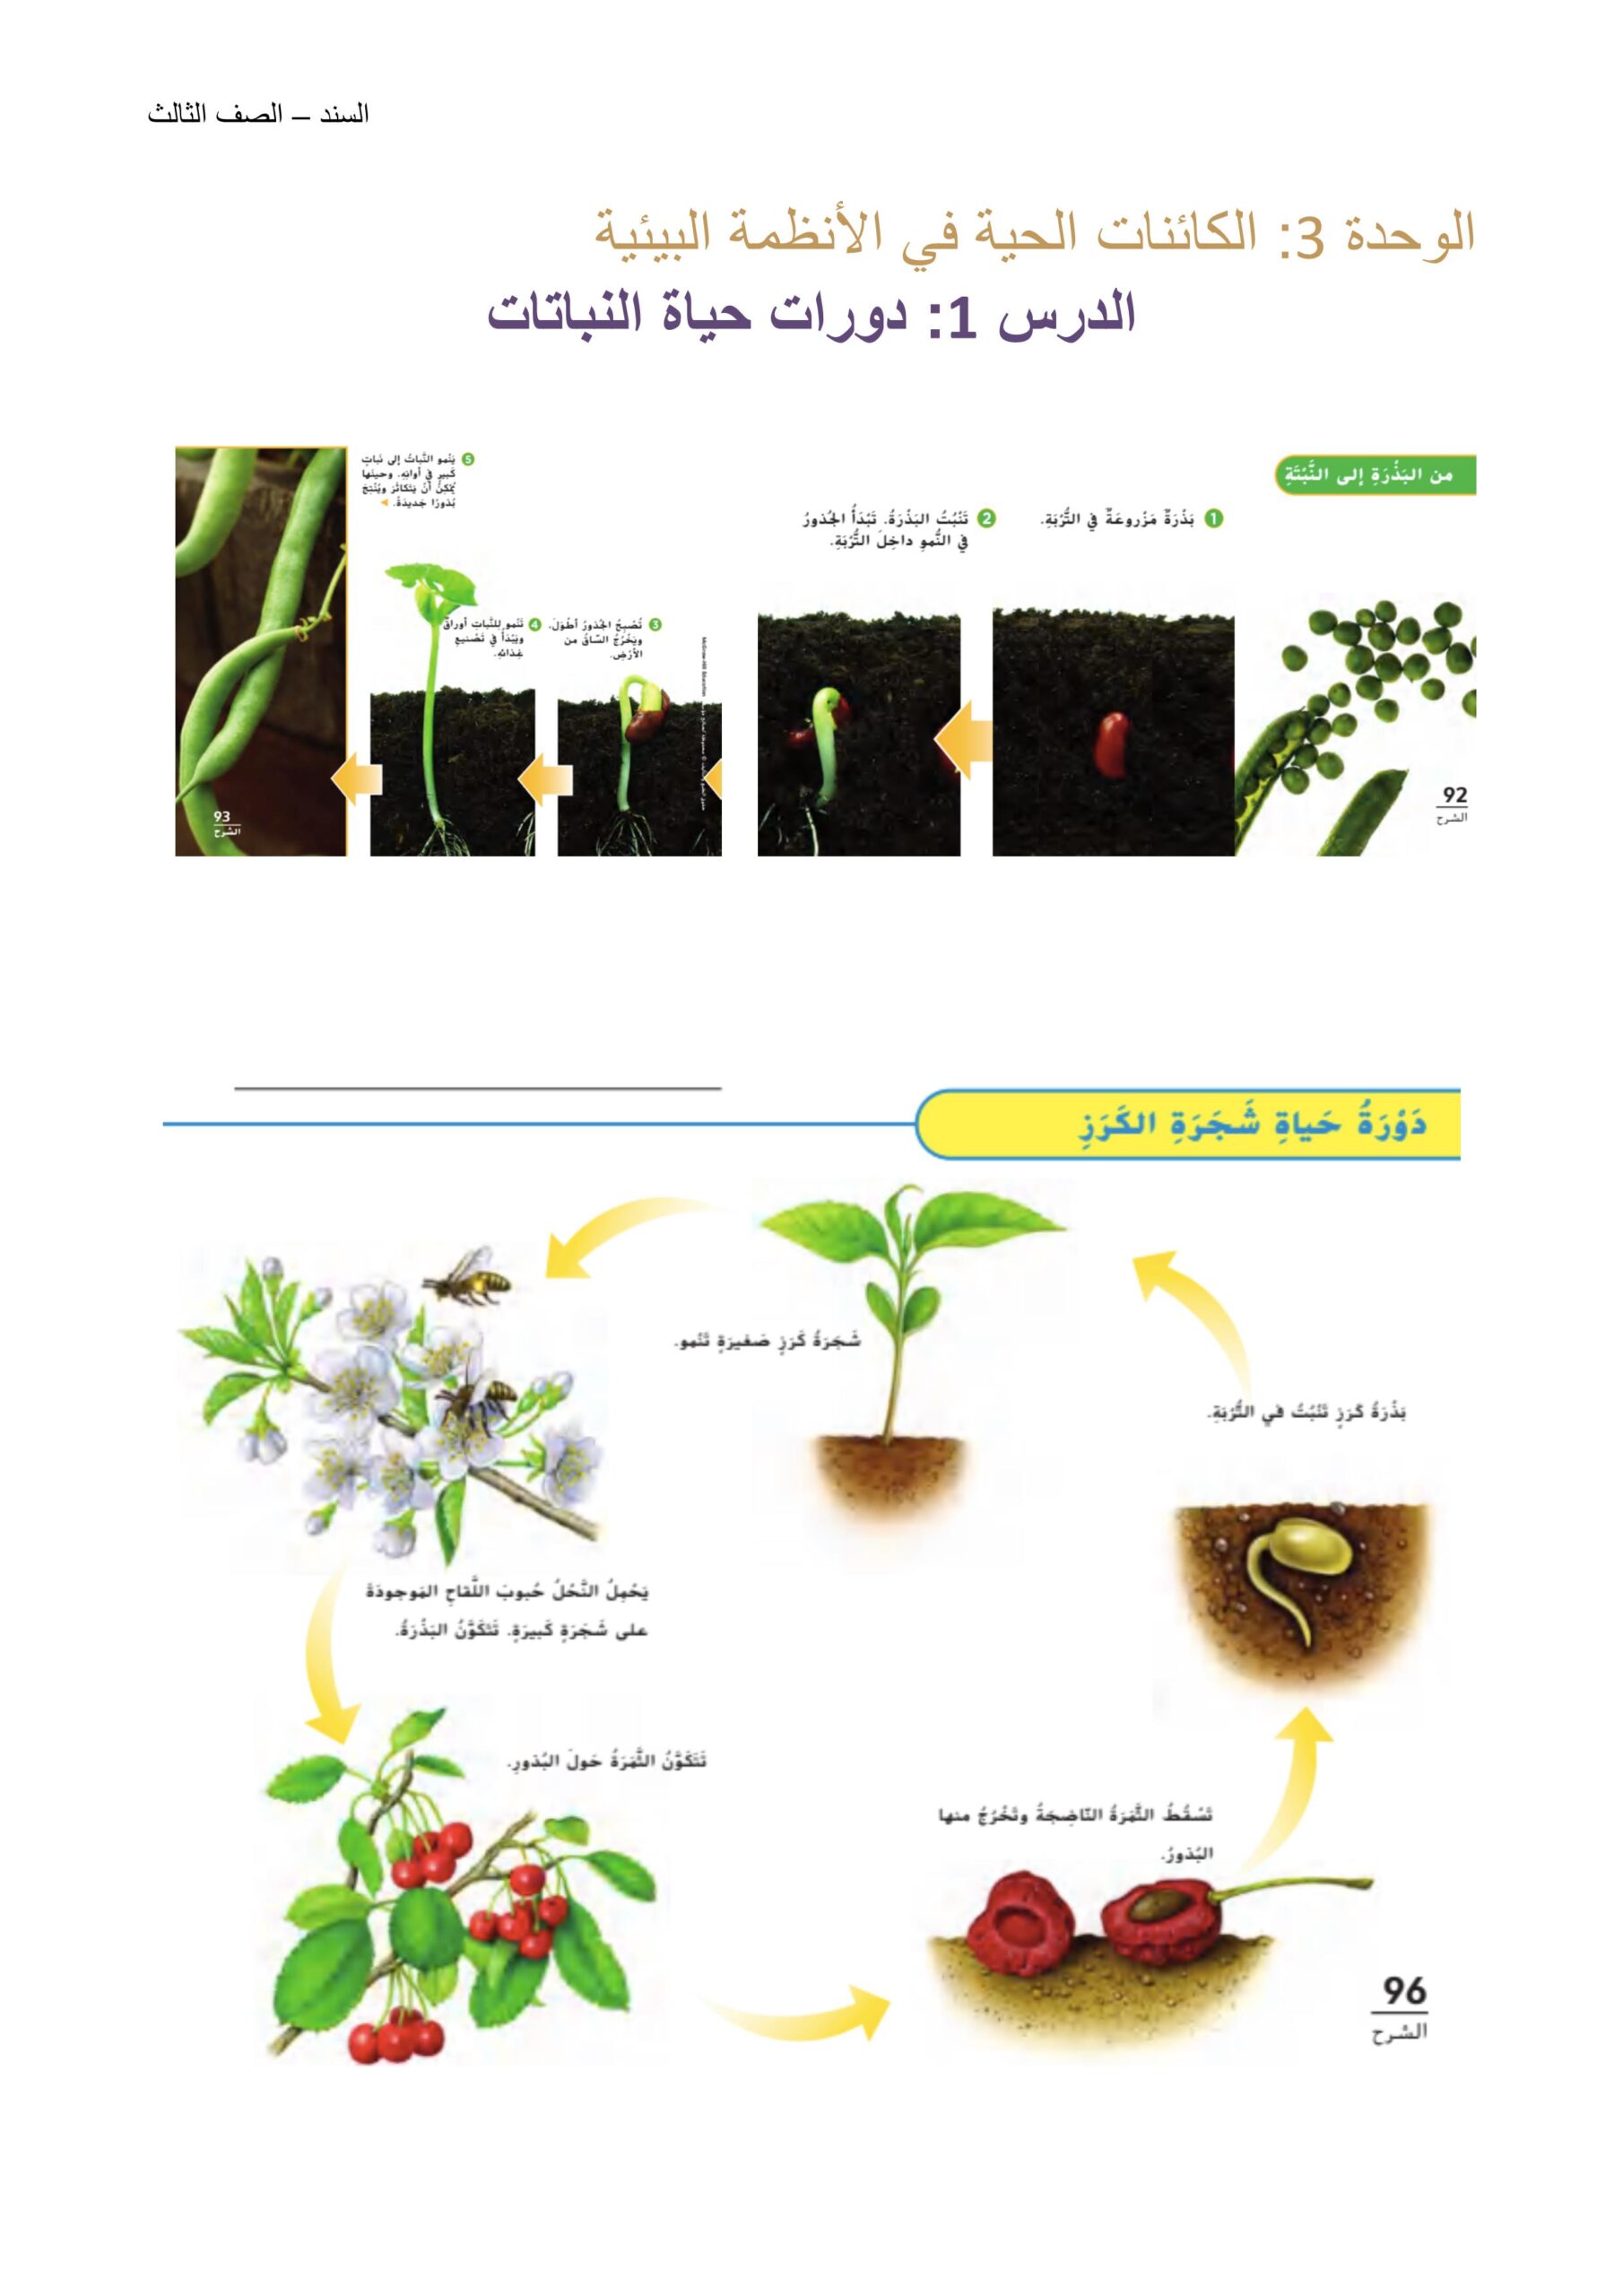 ملخص دورات حياة النباتات العلوم المتكاملة الصف الثالث 